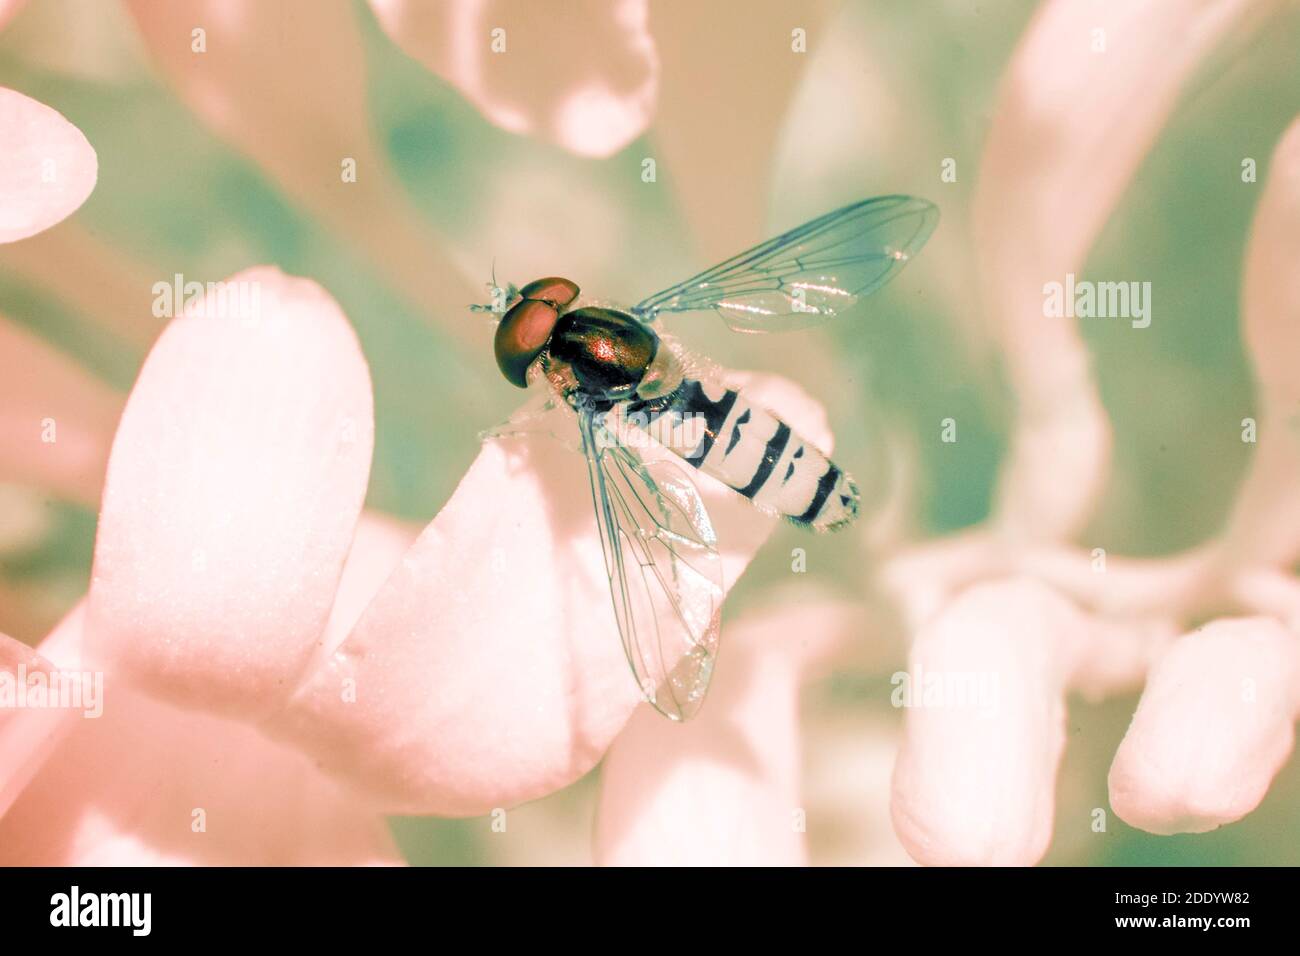 Schwebfliege fliegendes Insekt und Blume mit reflektierten Infrarotlicht erstellt - Draufsicht Stockfoto